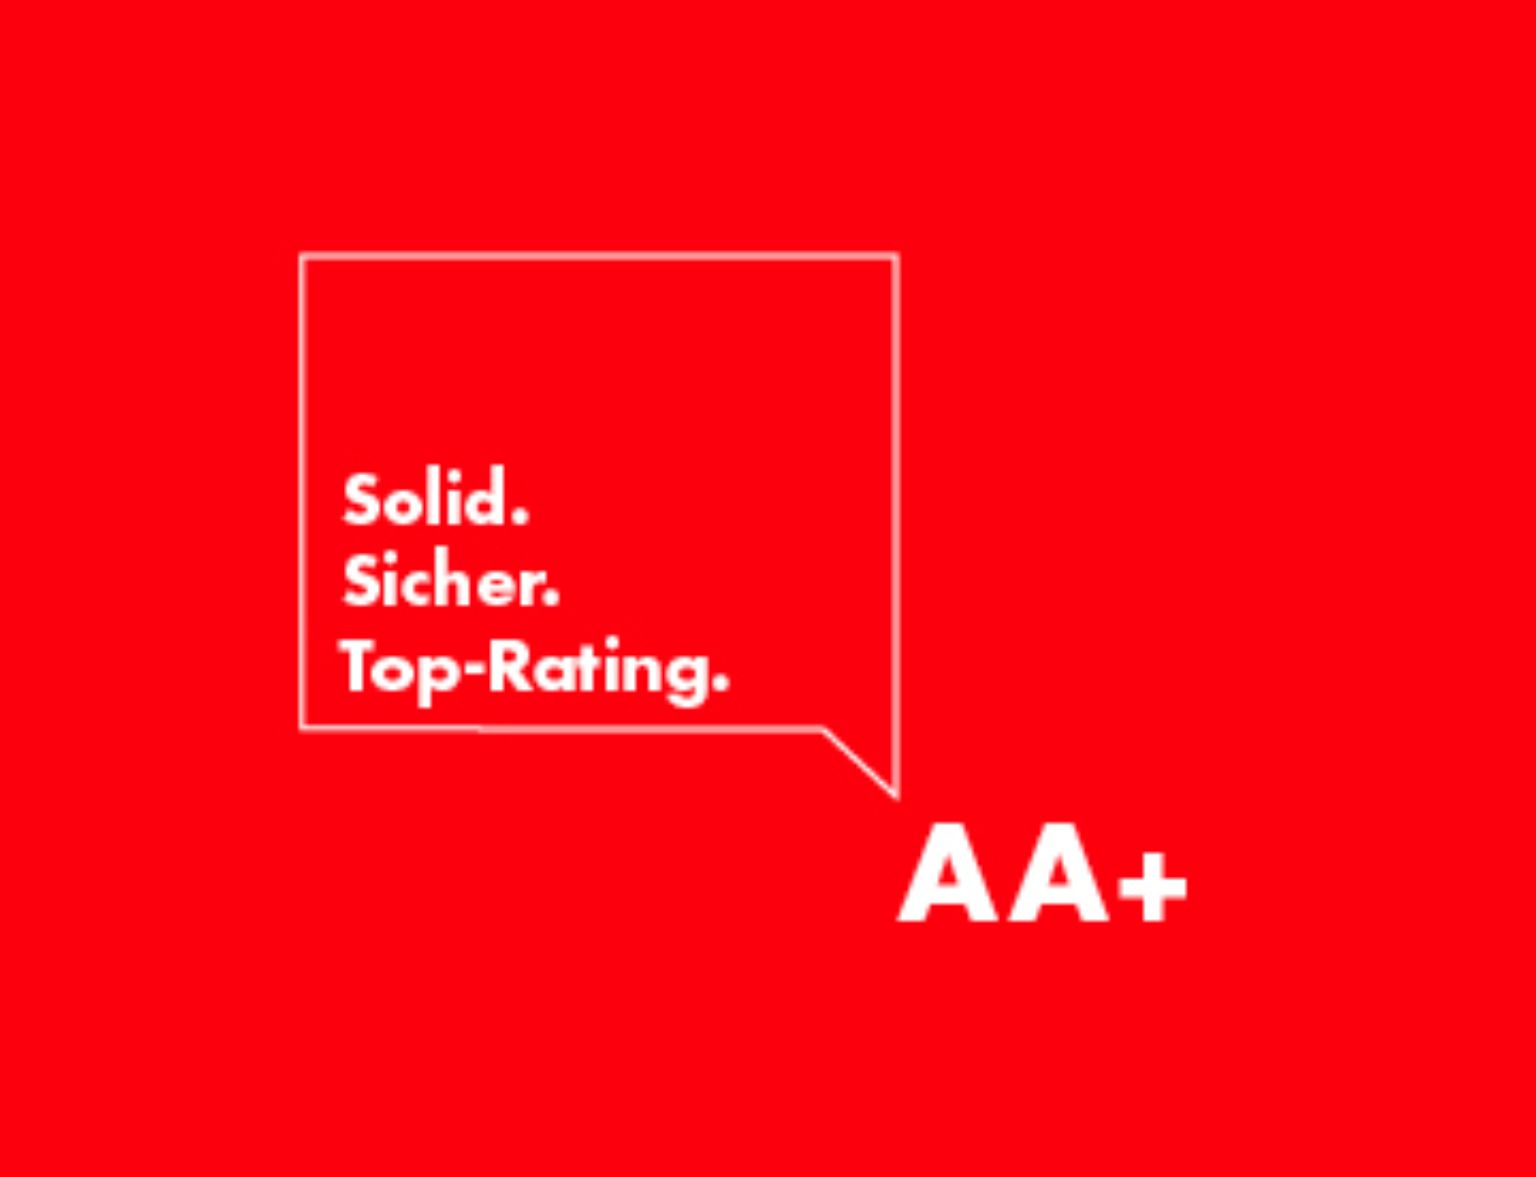 Top-Rating von Standard & Poor's: BLKB ist neu mit «AA+» bewertet teaser image